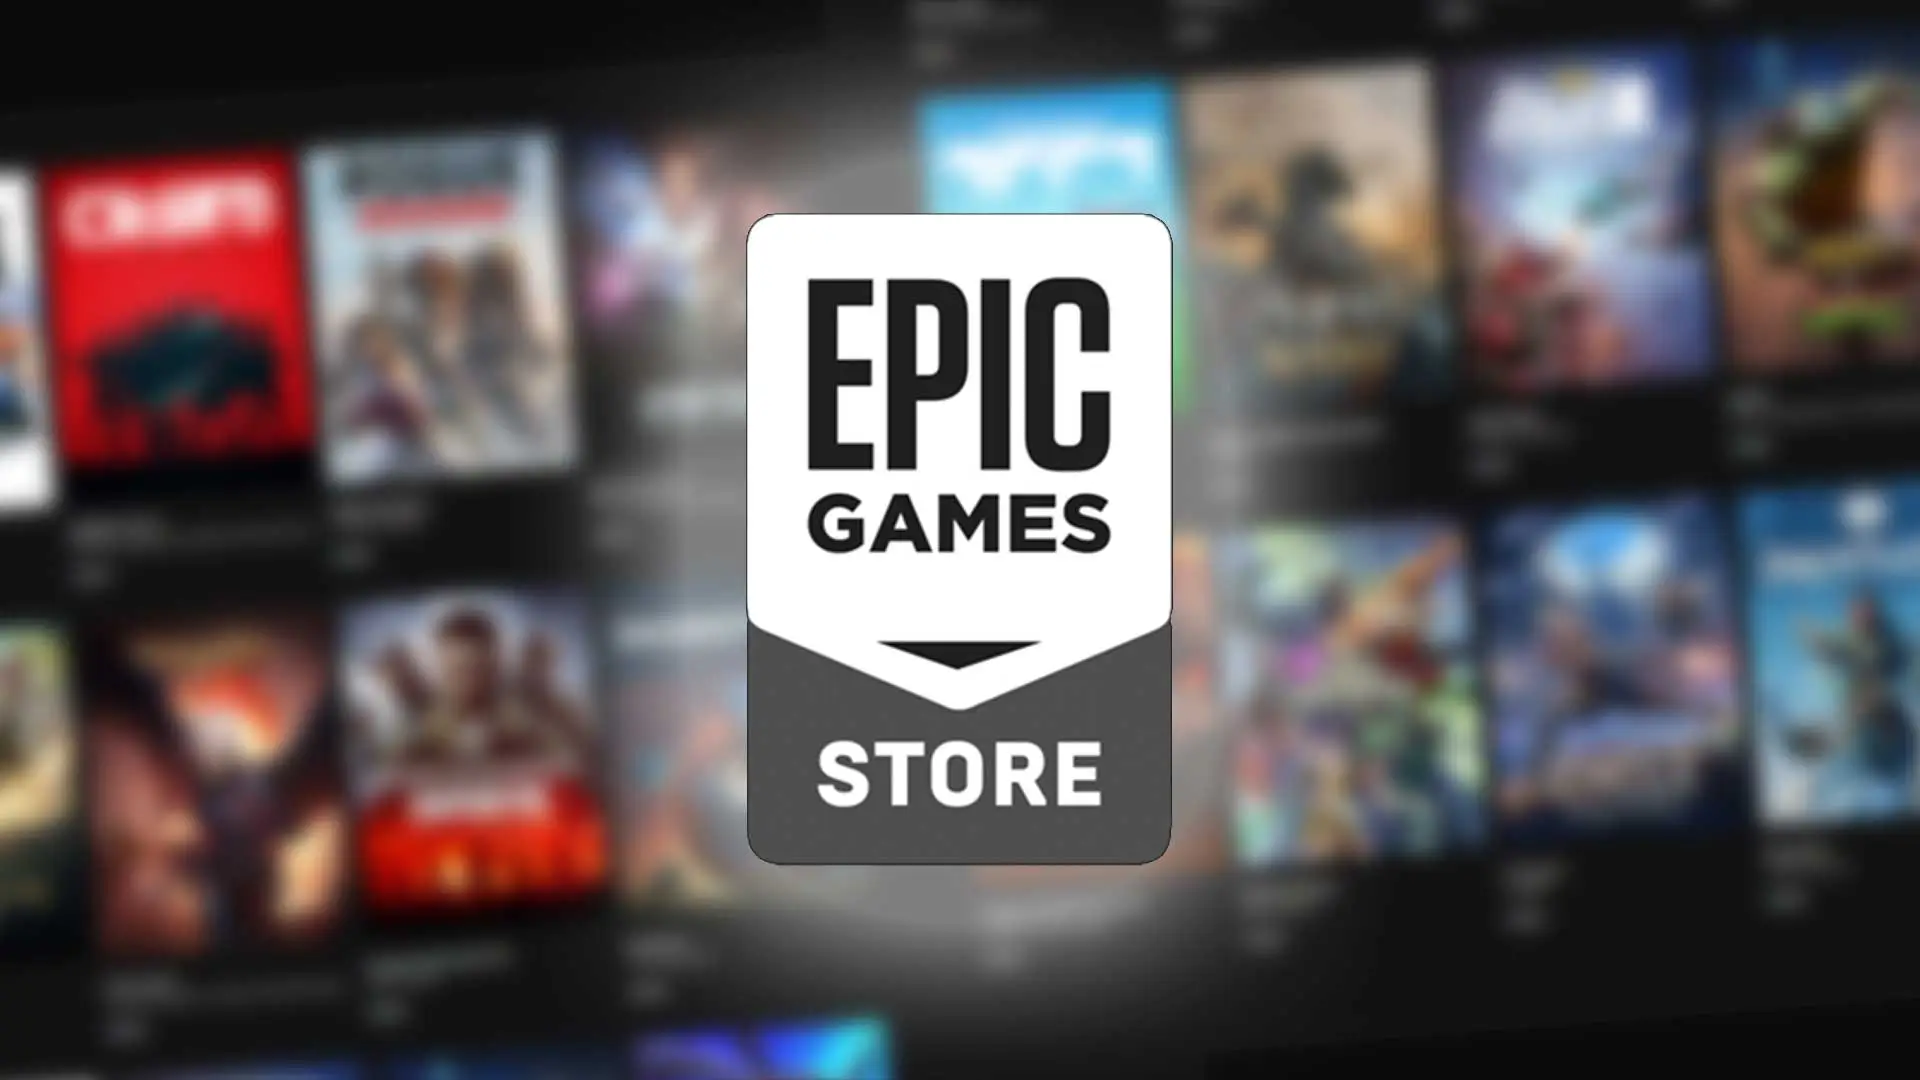 Epic Games heeft de gratis games van deze week uitgebracht!